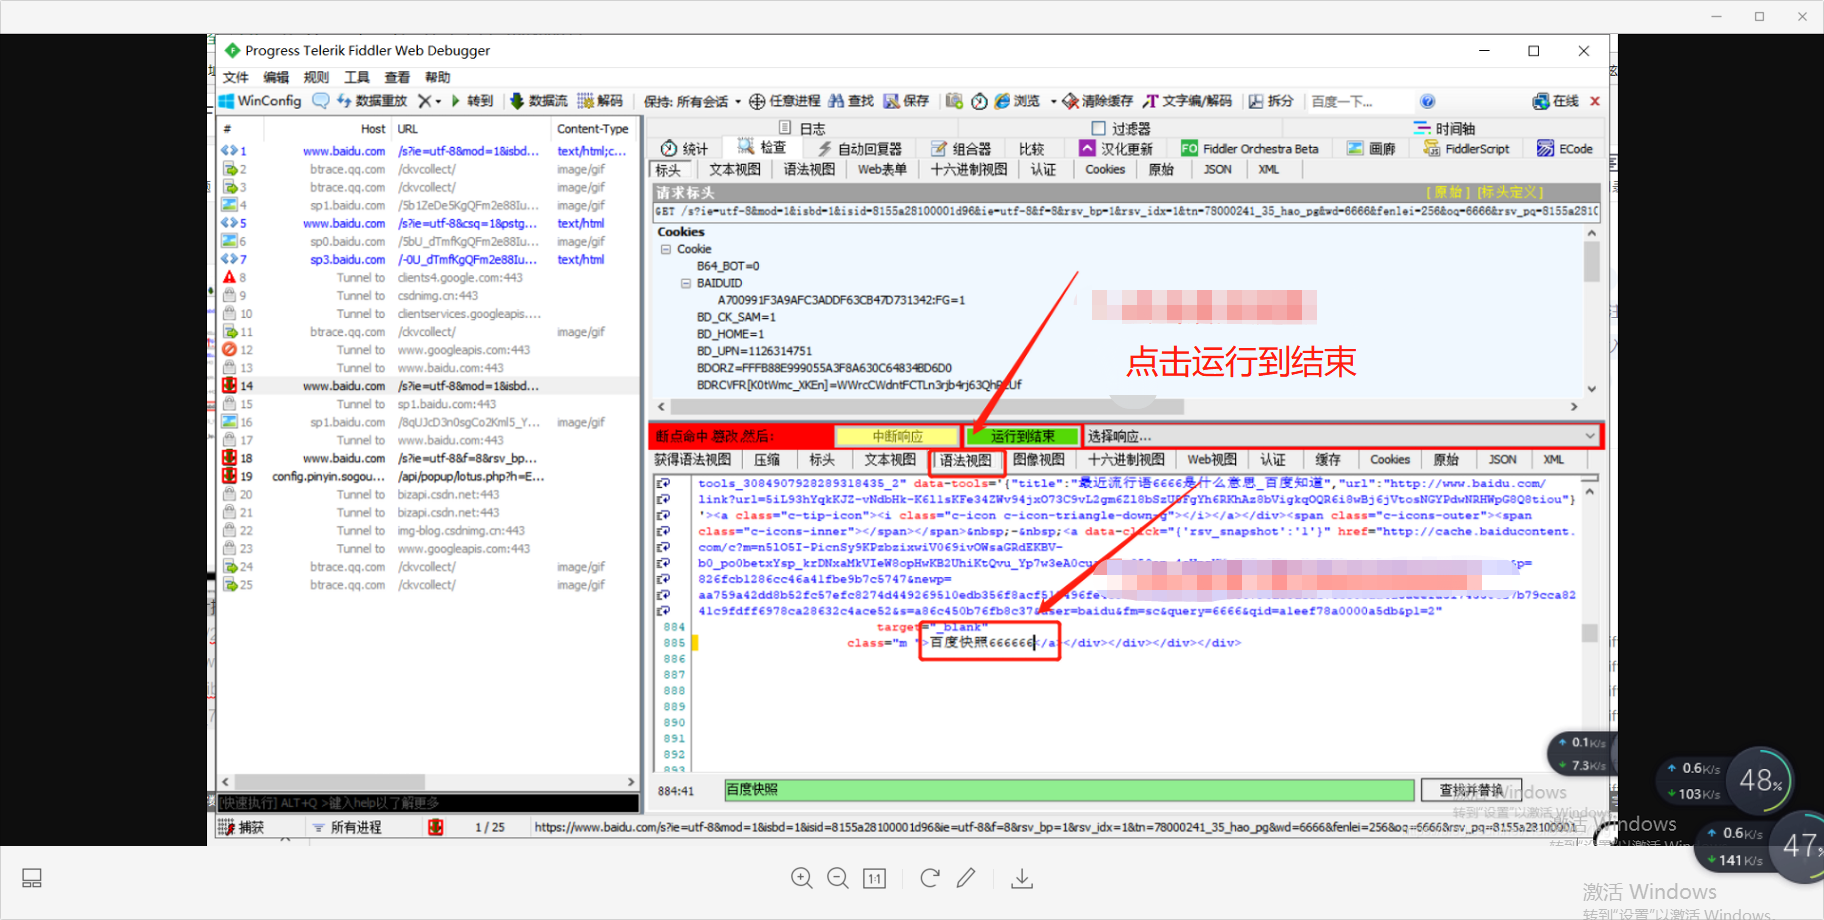 Fiddler中文版配置教程+下载地址（附送视频教程）